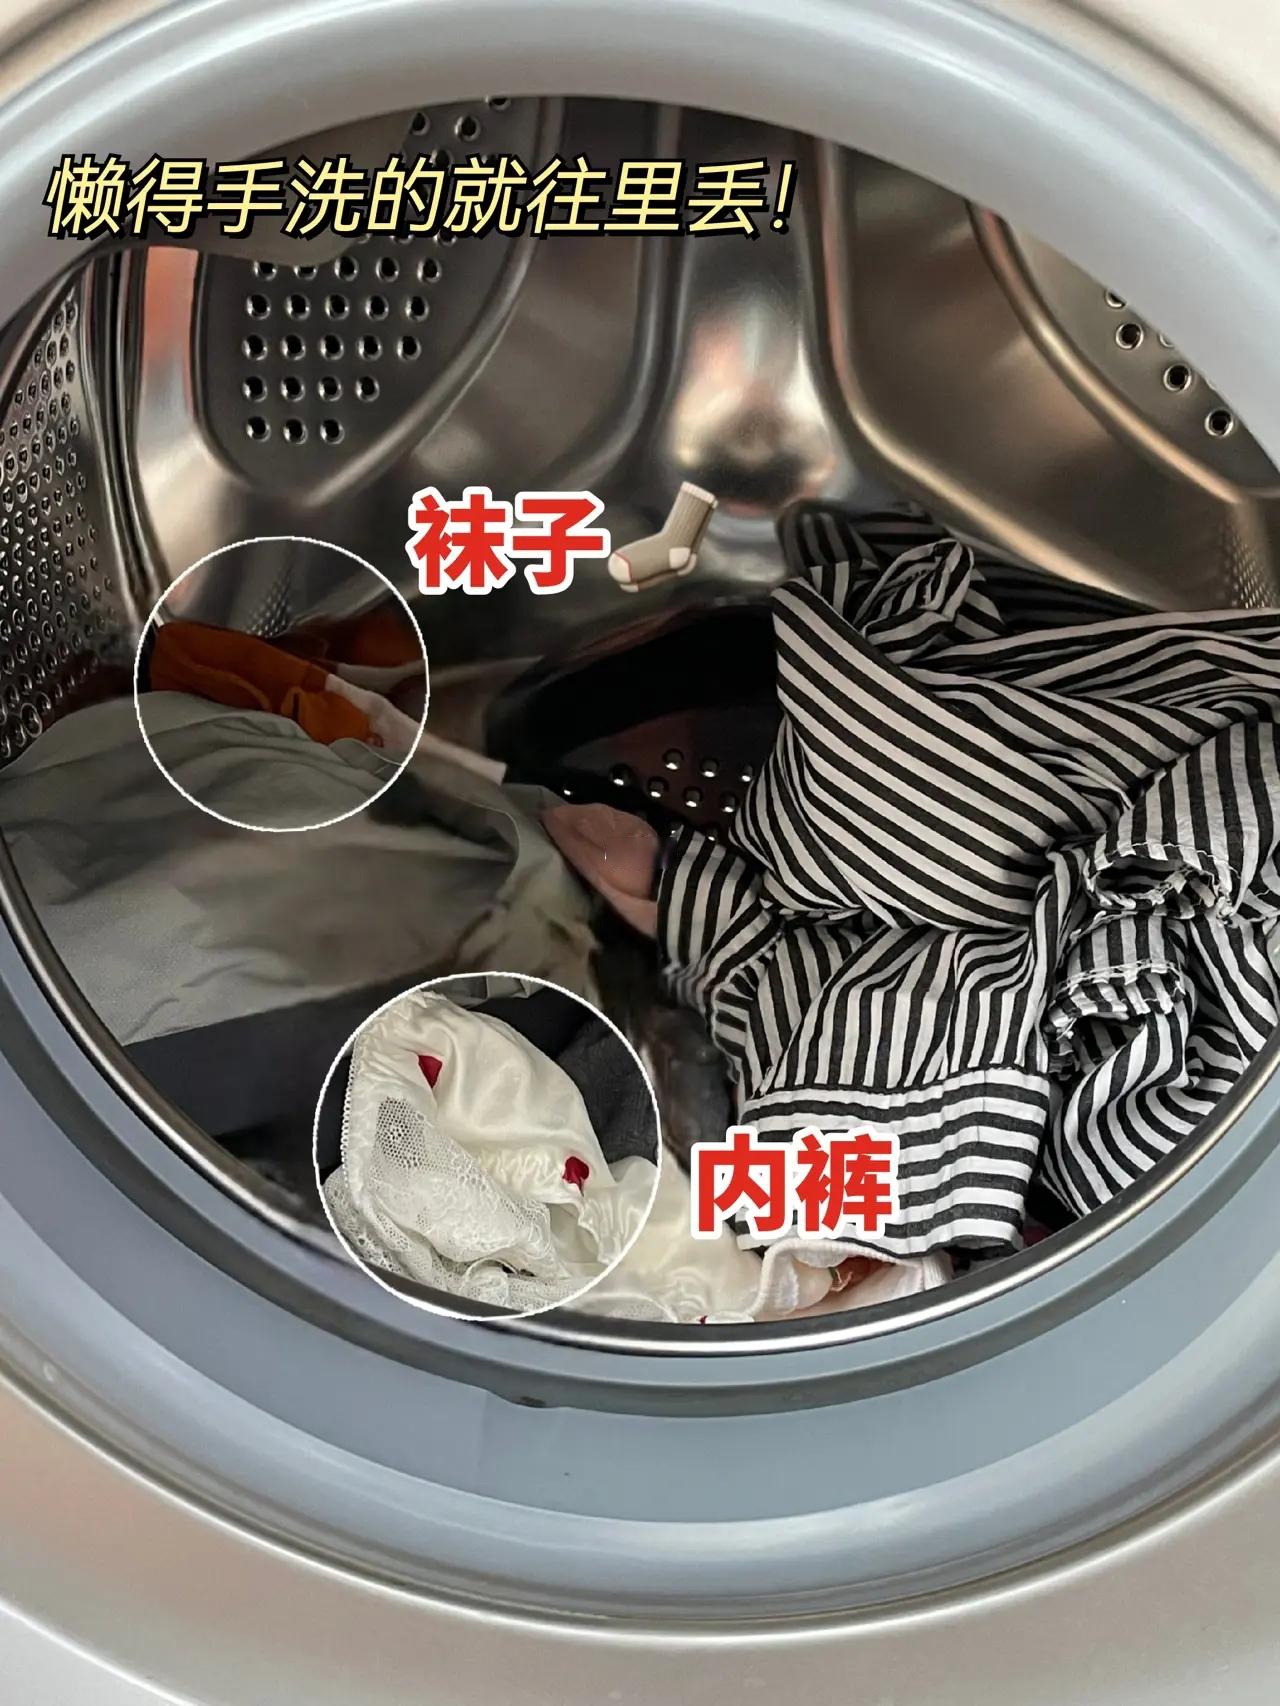 洗衣机吃袜子的图解图片